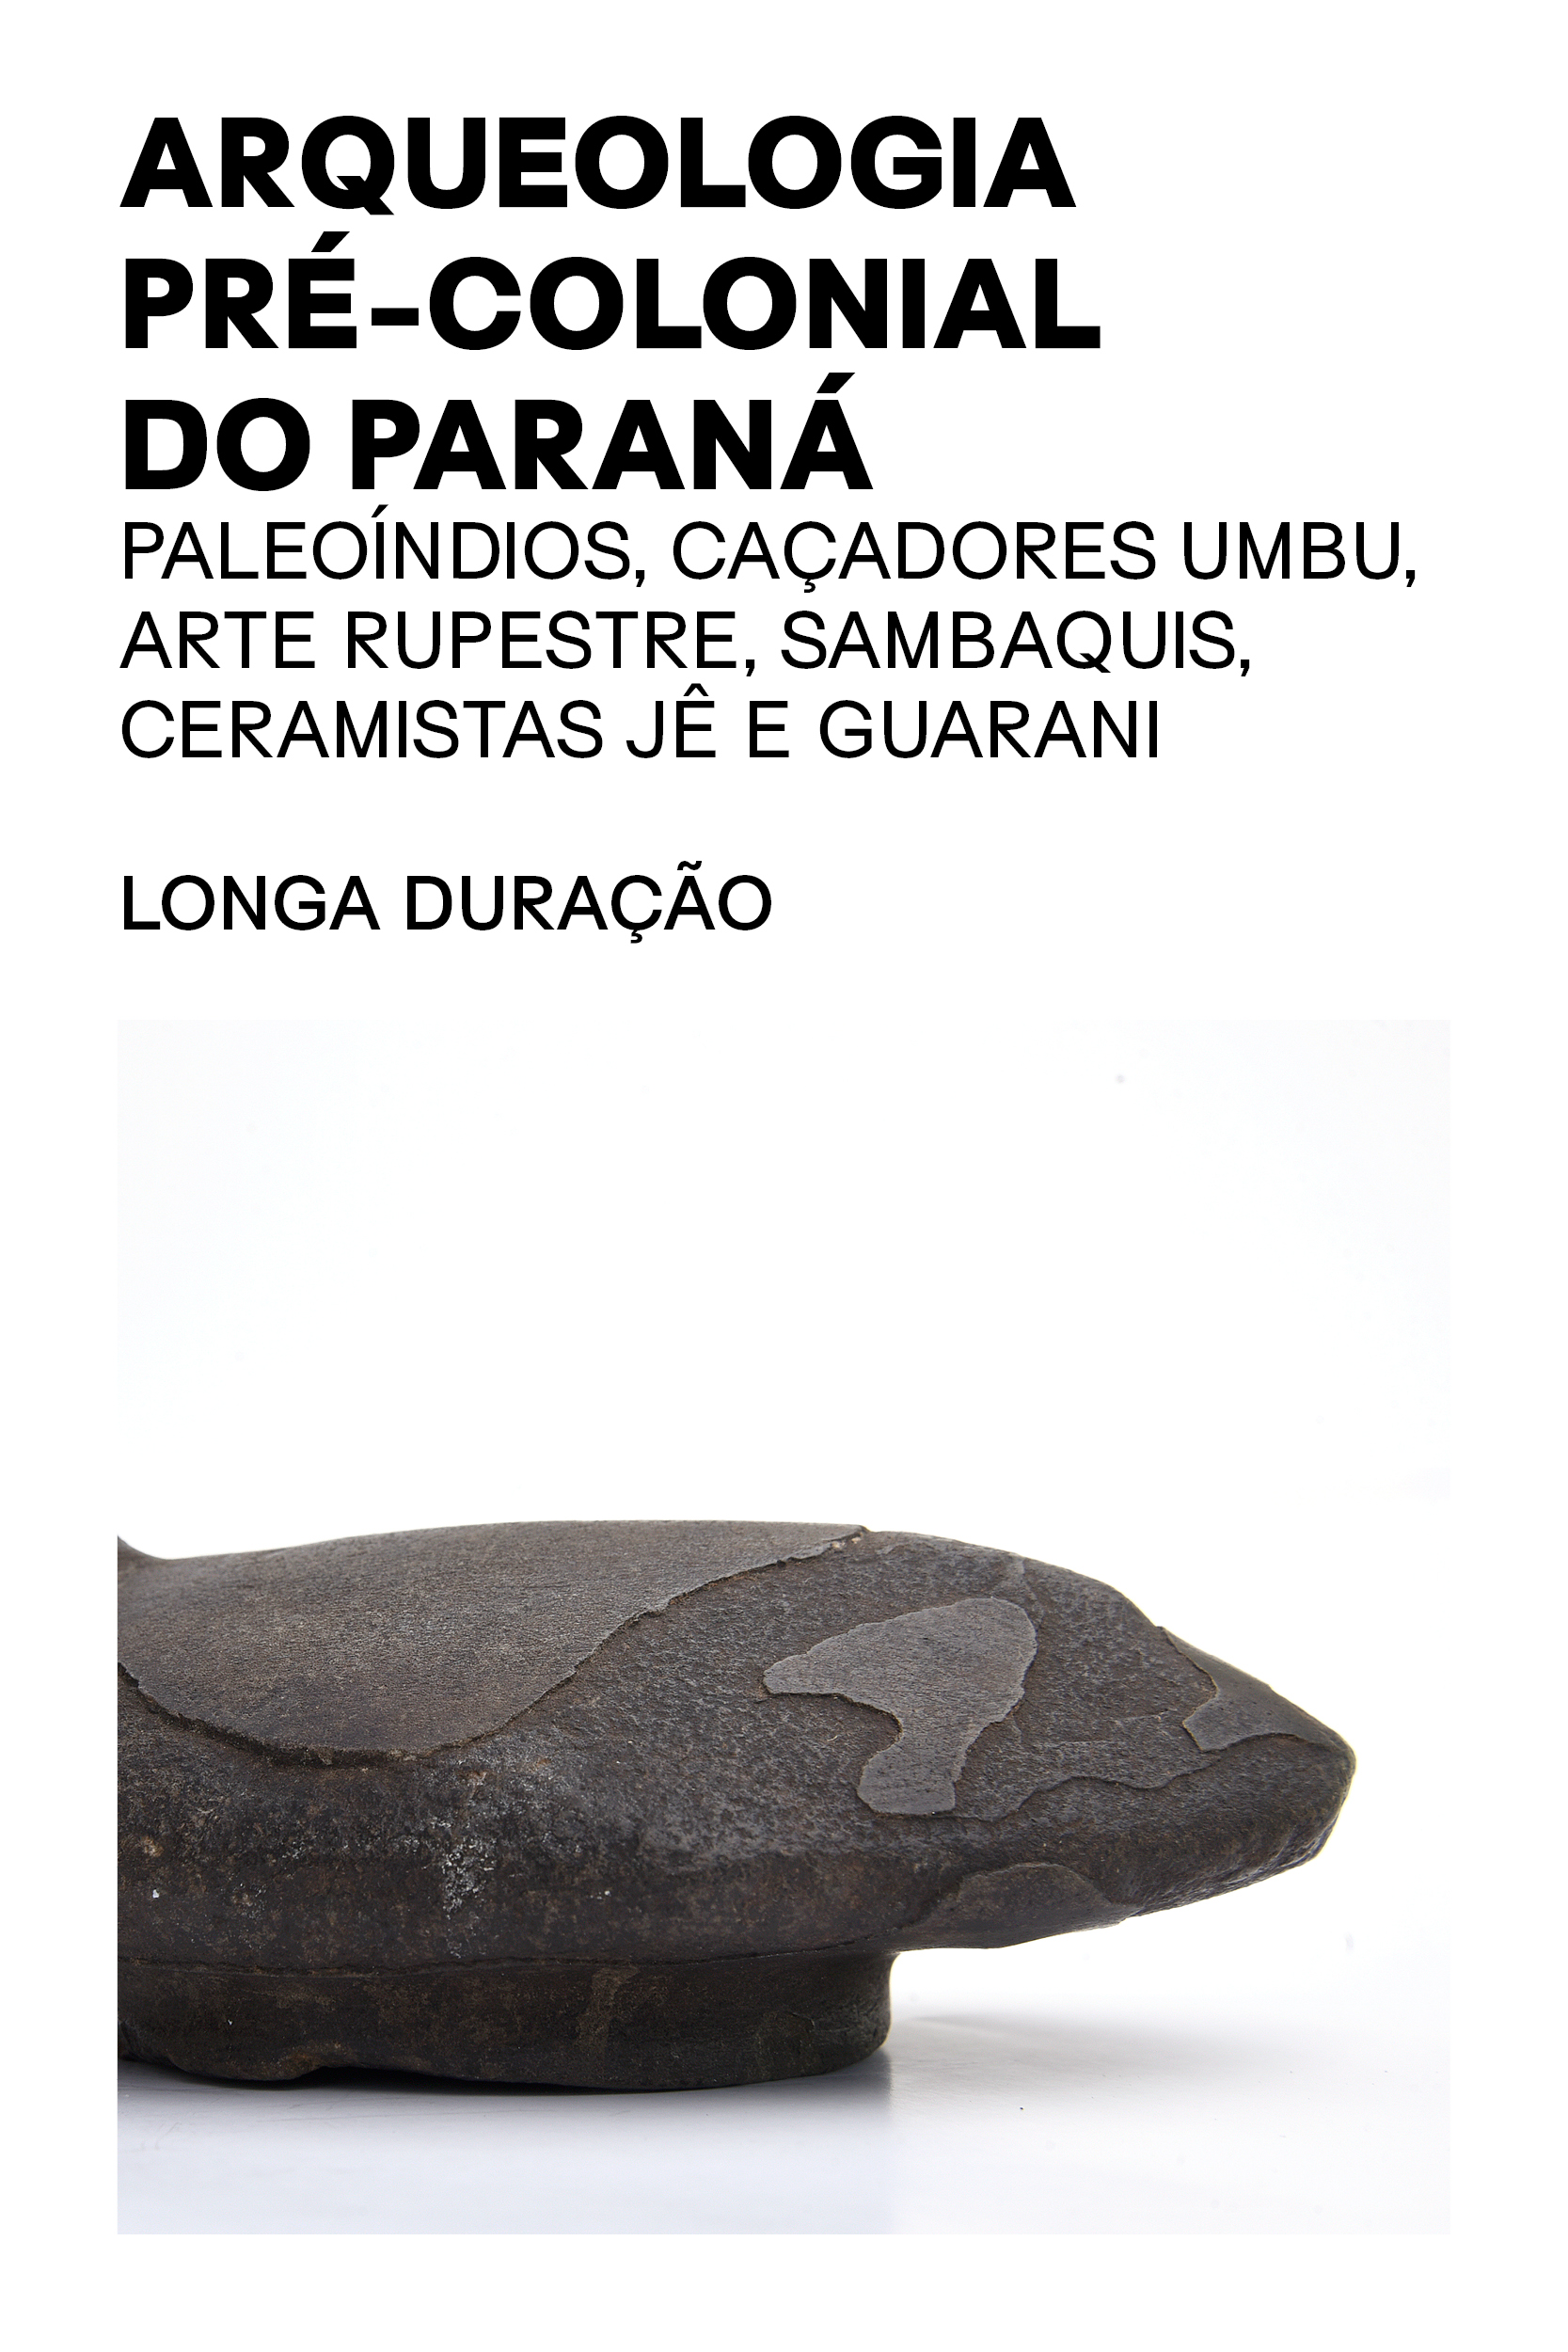 Exposição Arqueologia pré-colonial do Paraná - Longa duração